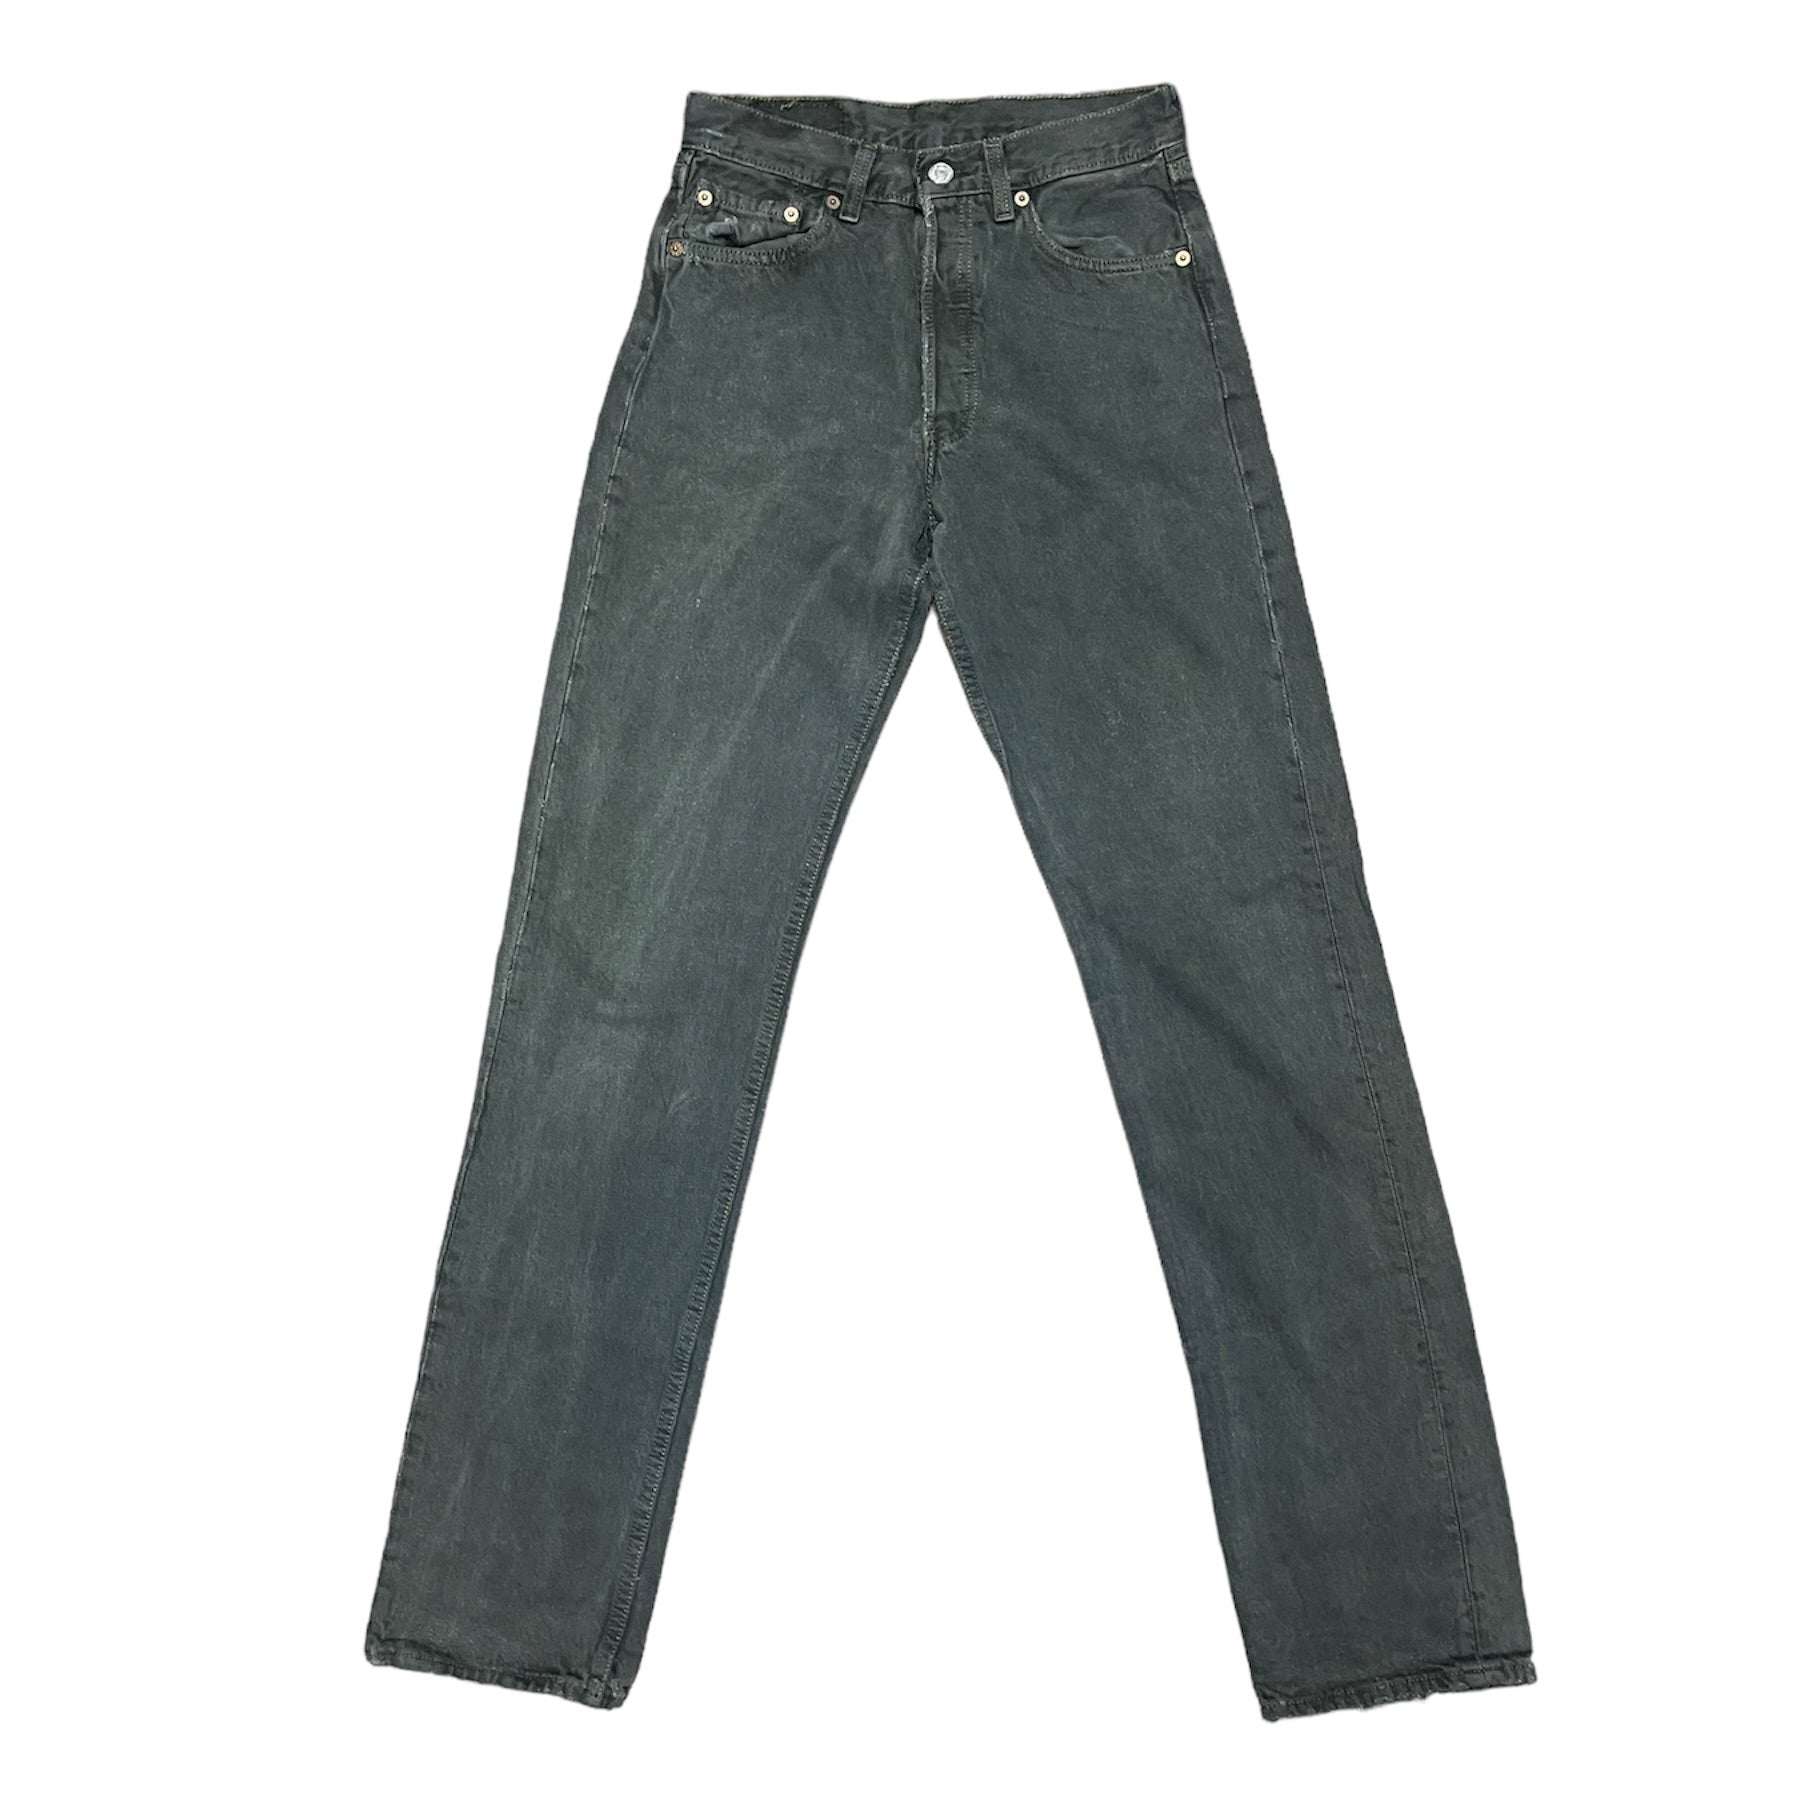 Vintage Levis 501 Gray Jeans (W28/L34)